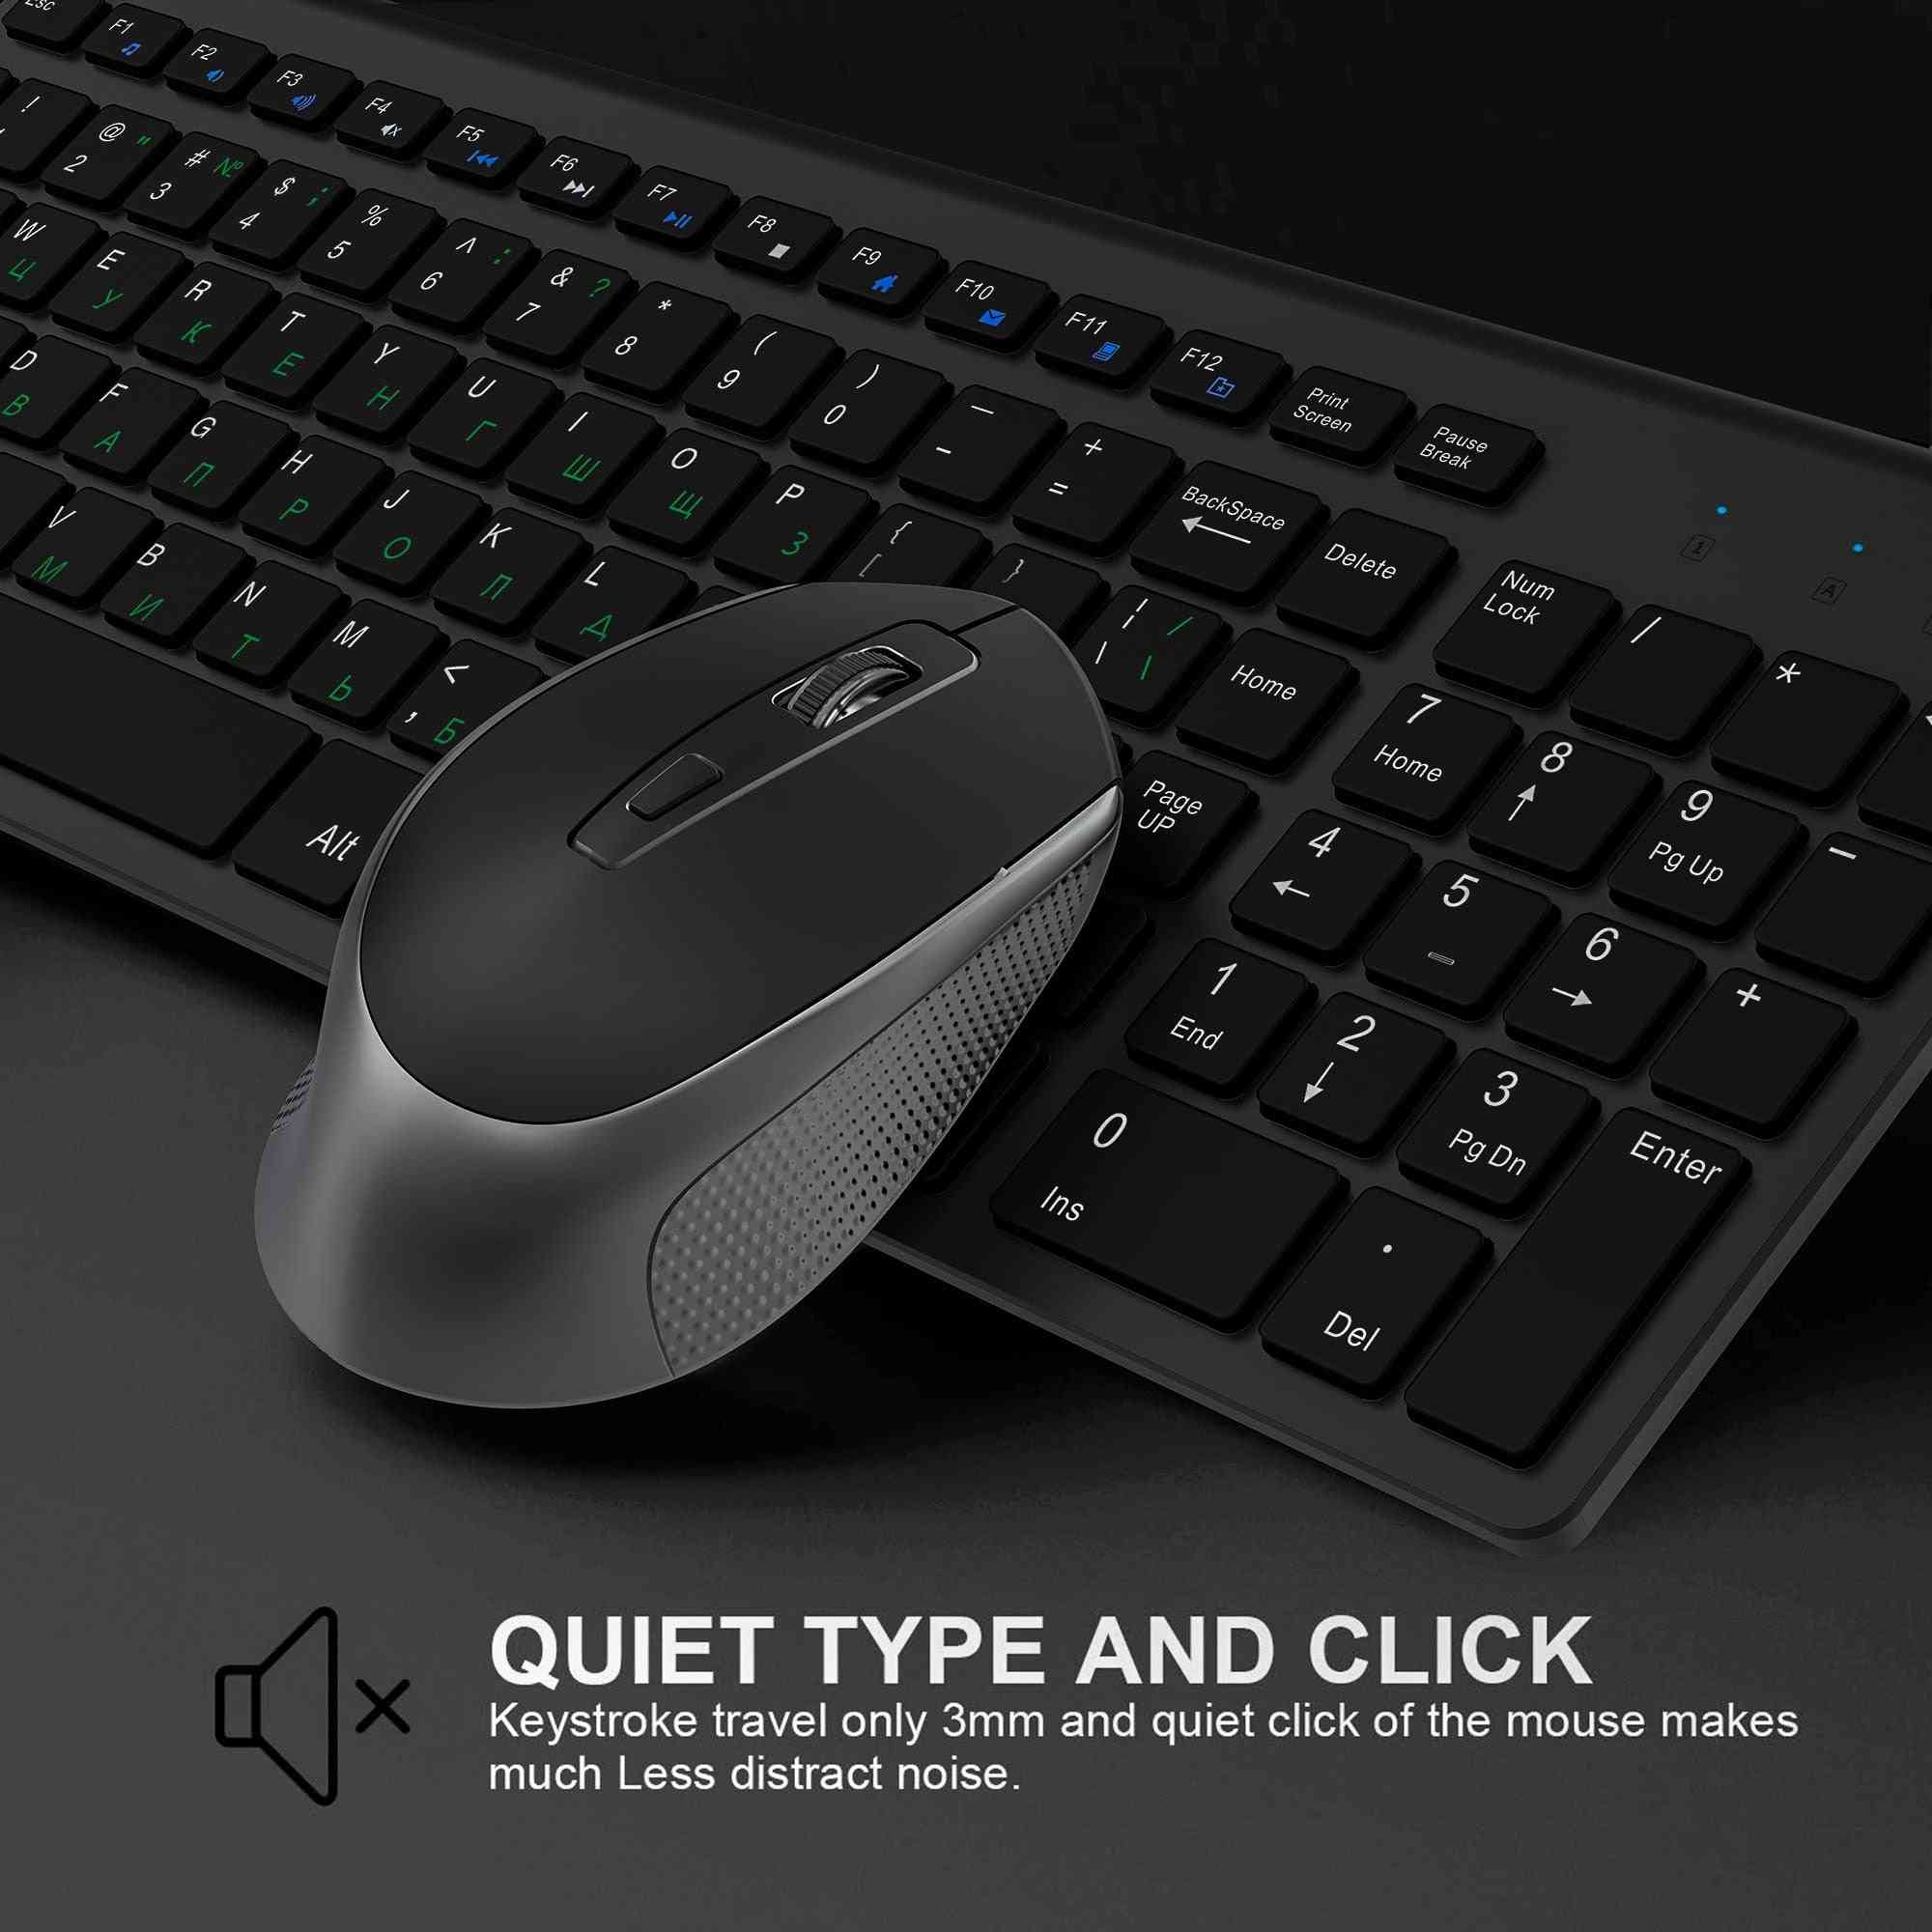 Sada bezdrátové klávesnice a myši - ergonomická myš, tiché tlačítko (železná šedá)